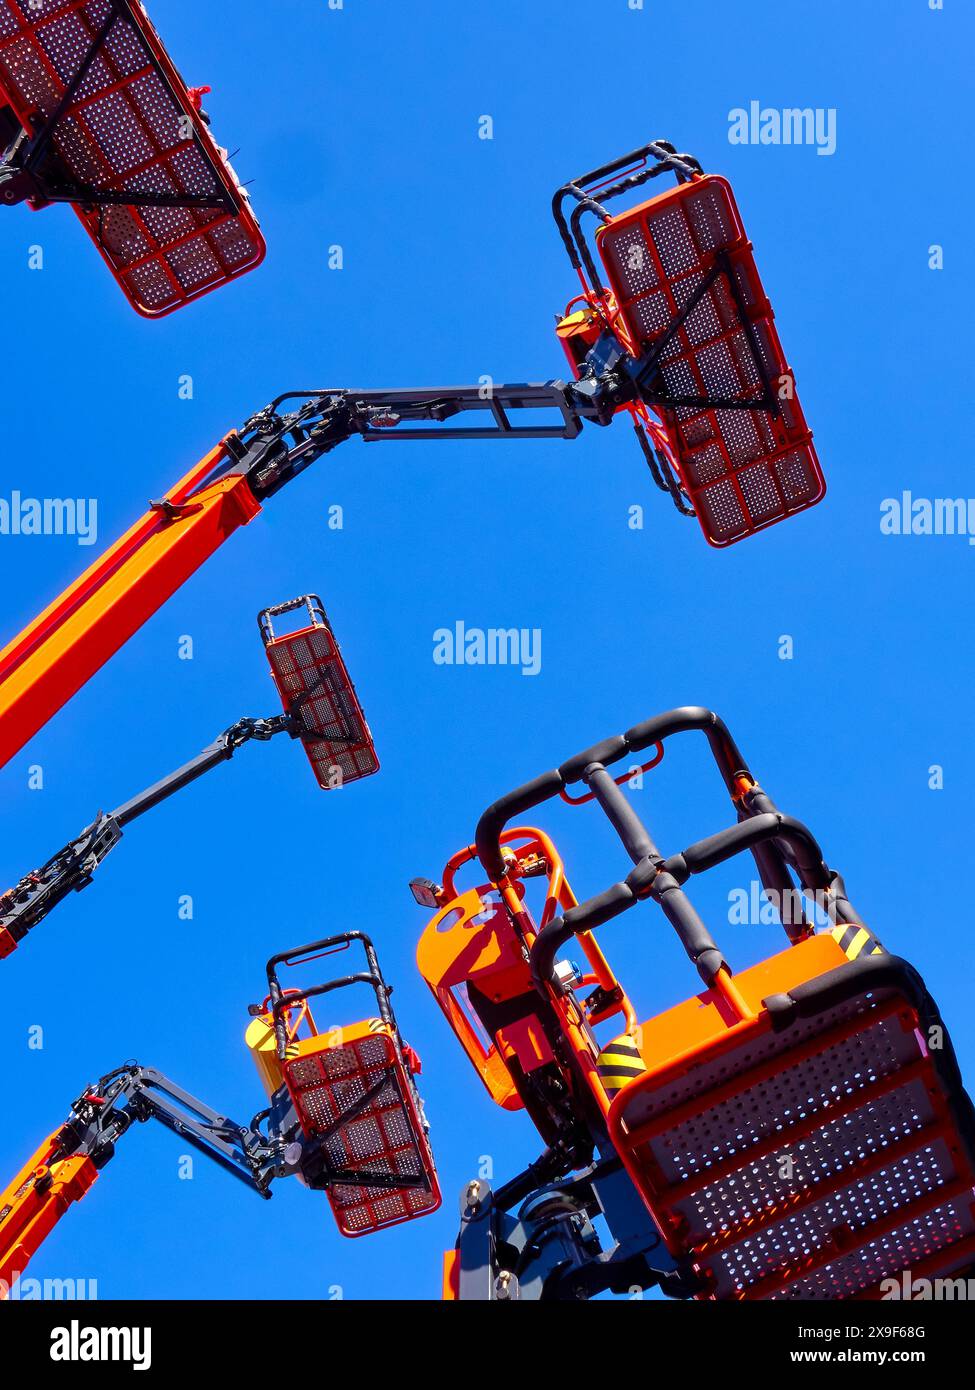 Grand groupe de grues articulées, paniers et bras hydrauliques haut dans un ciel bleu clair, plan de perspective à faible angle. Banque D'Images